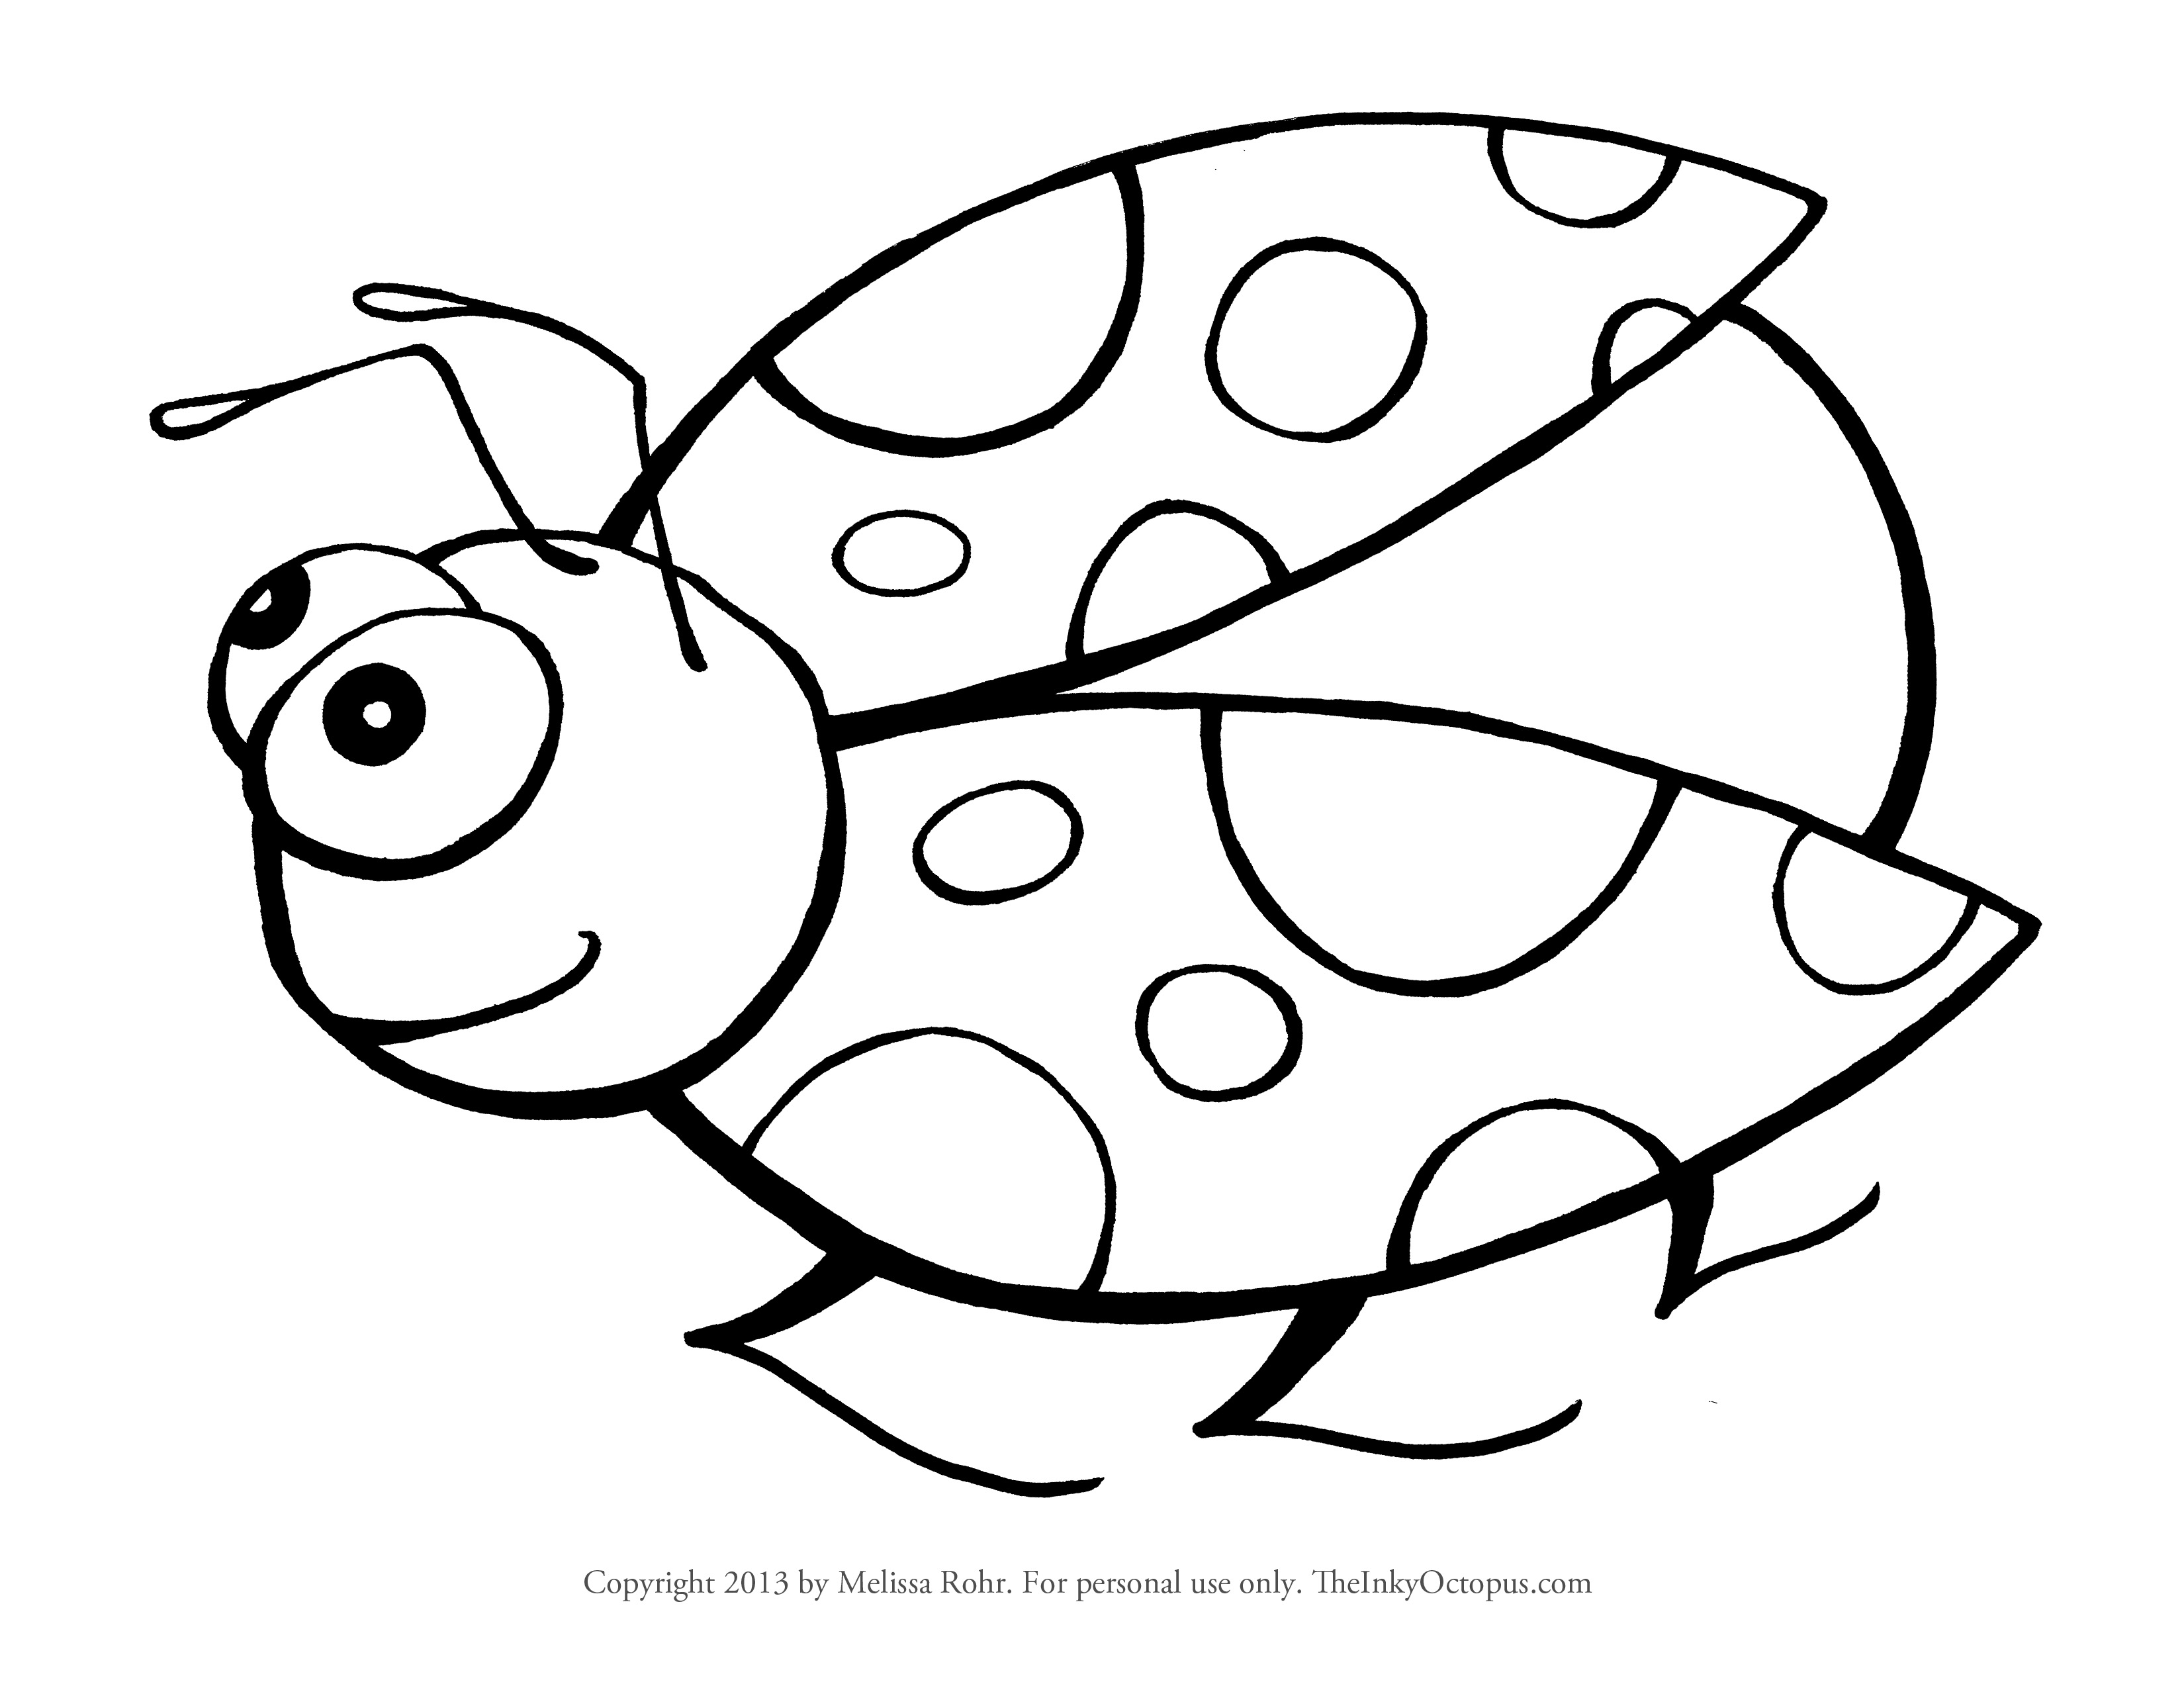 Ladybug Drawing Black and White, Ladybug Coloring Pages Printable ...